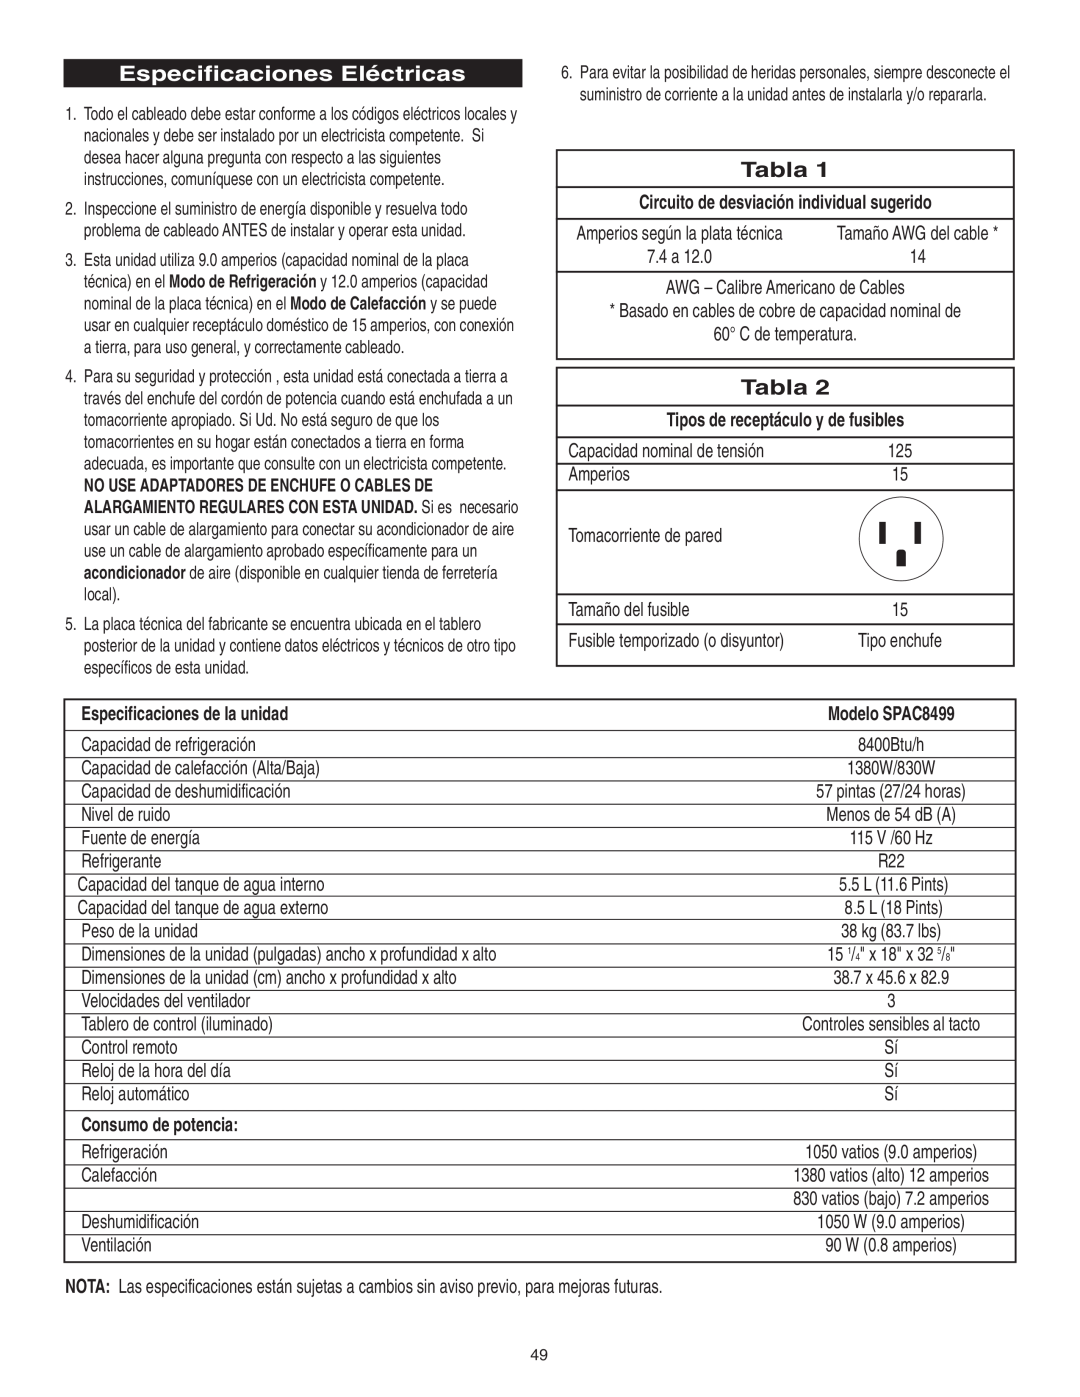 Danby manual Especificaciones Eléctricas, Tabla, Circuito de desviación individual sugerido, Modelo SPAC8499 